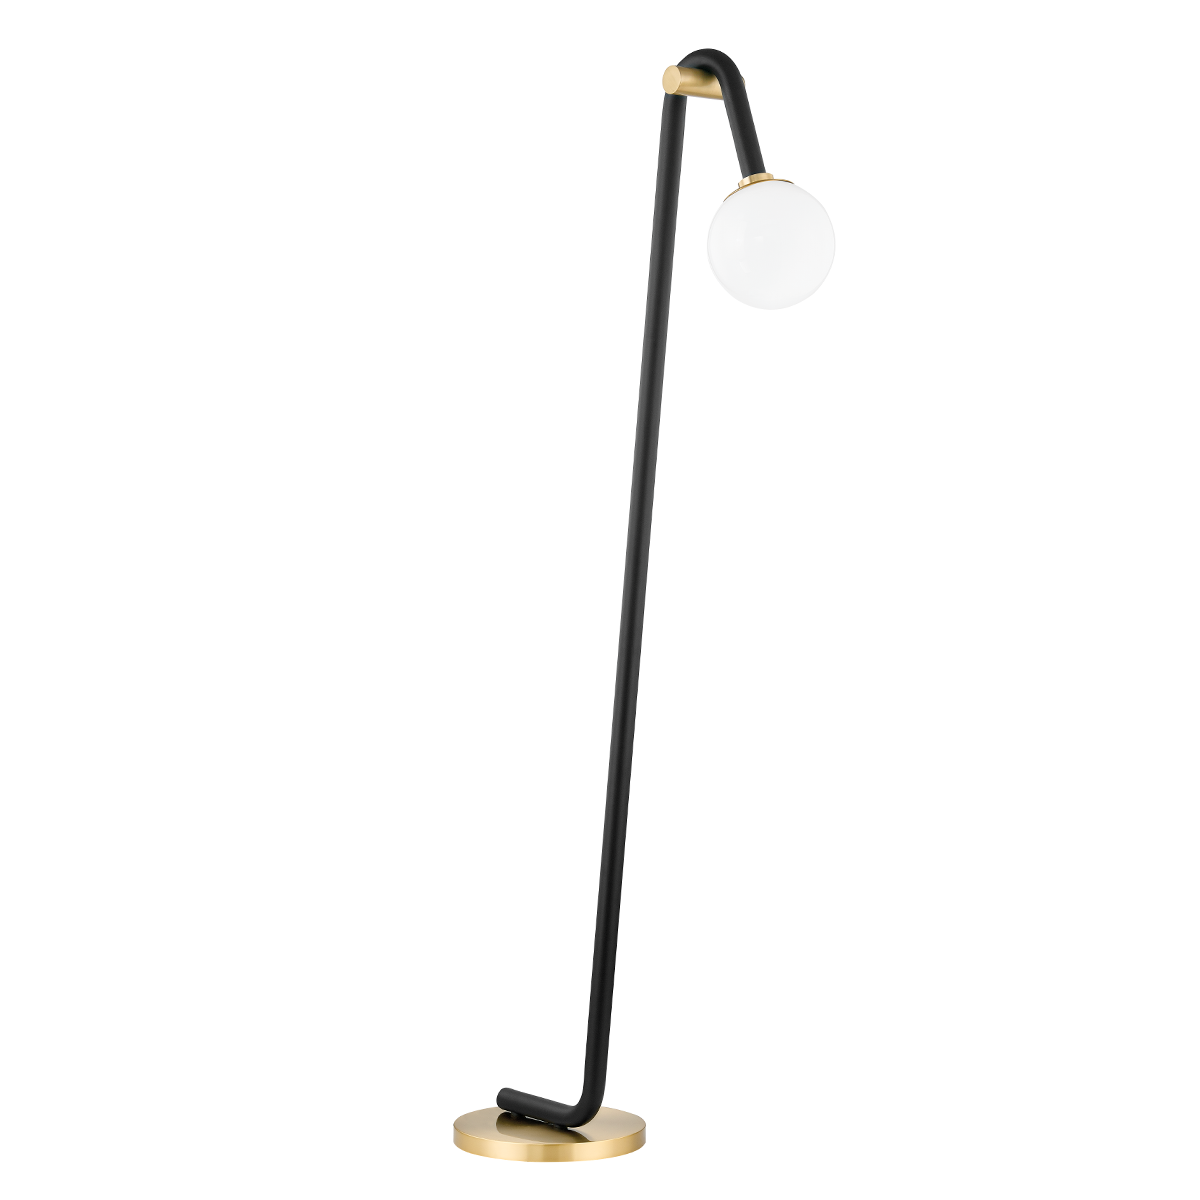 Whit 1 Light Floor Lamp-Mitzi-HVL-HL382401-AGB/BK-Floor LampsAged Brass / Black-1-France and Son